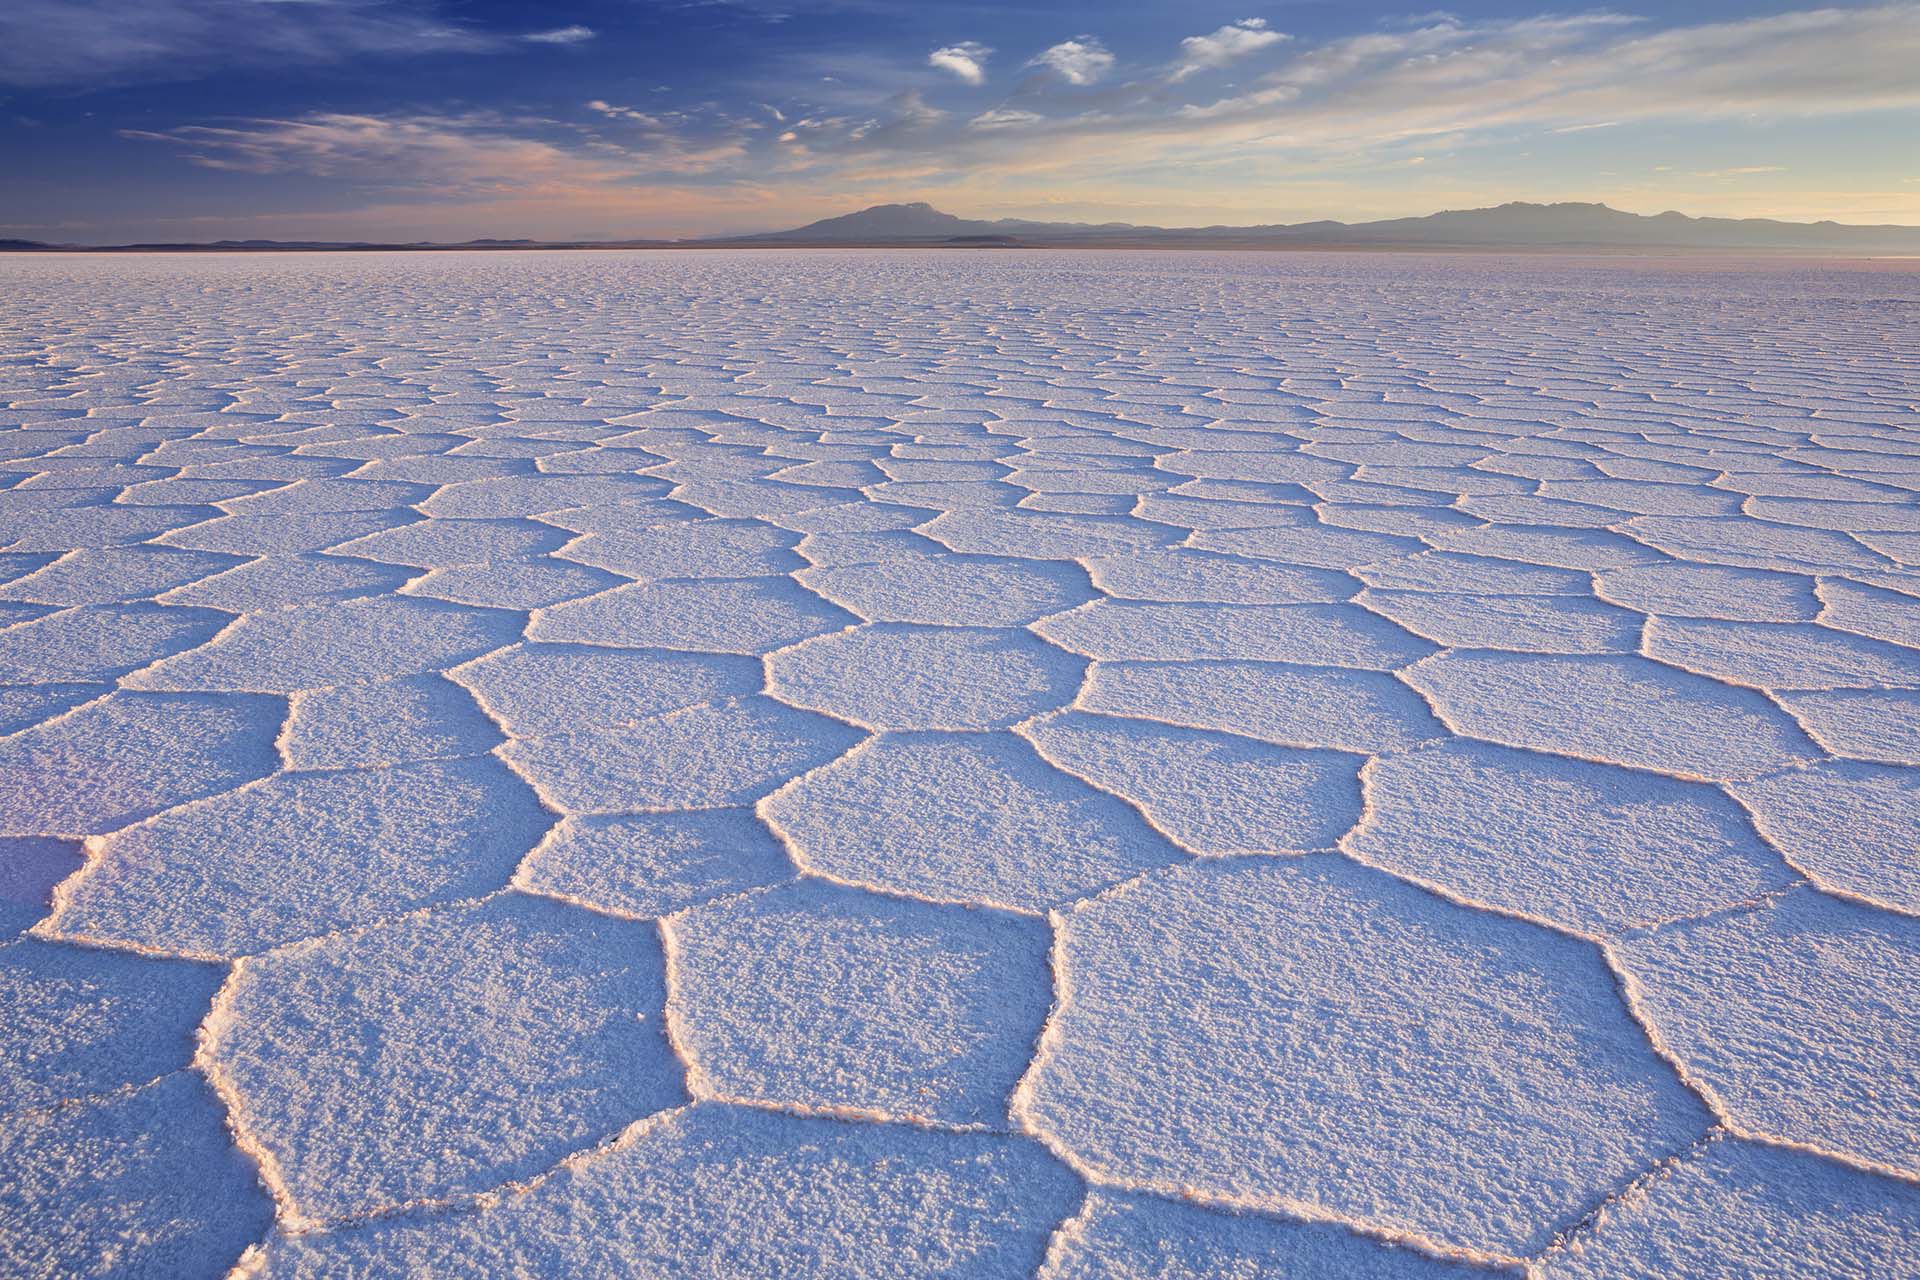 Superlativo en su belleza natural, resistente, irritante, complejo y un poco estresante, Bolivia es una de las naciones más diversas e intrigantes de América del Sur. Situado a 3650 metros de altura en la región suroeste de Bolivia, en el altiplano, sobre la gran cordillera de los Andes, el salar de Uyuni es el mayor desierto de sal continuo del mundo, con una superficie de 12 000 km²